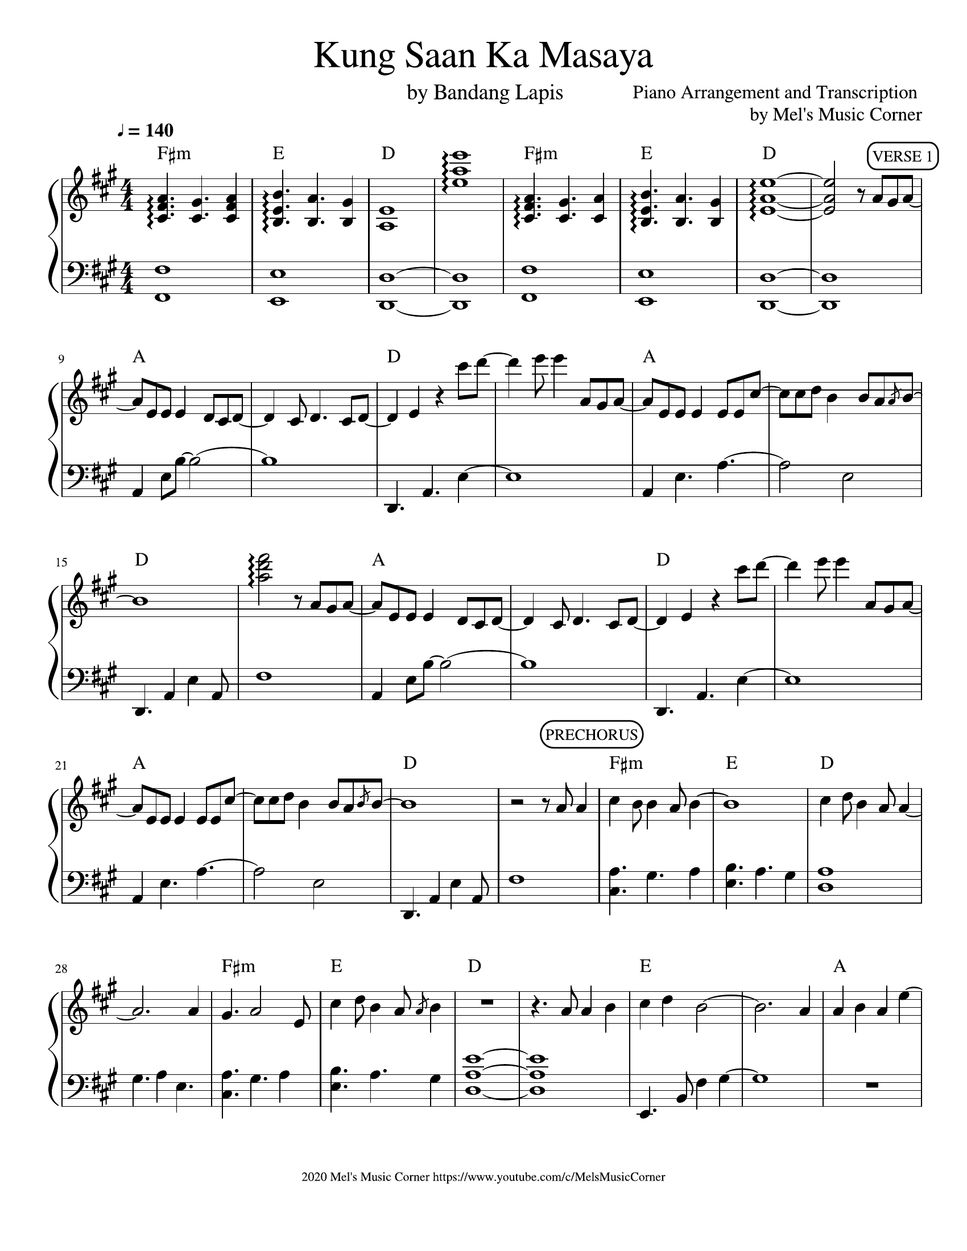 Bandang Lapis - Kung Saan Ka Masaya (piano sheet music) 樂譜 by Mel's